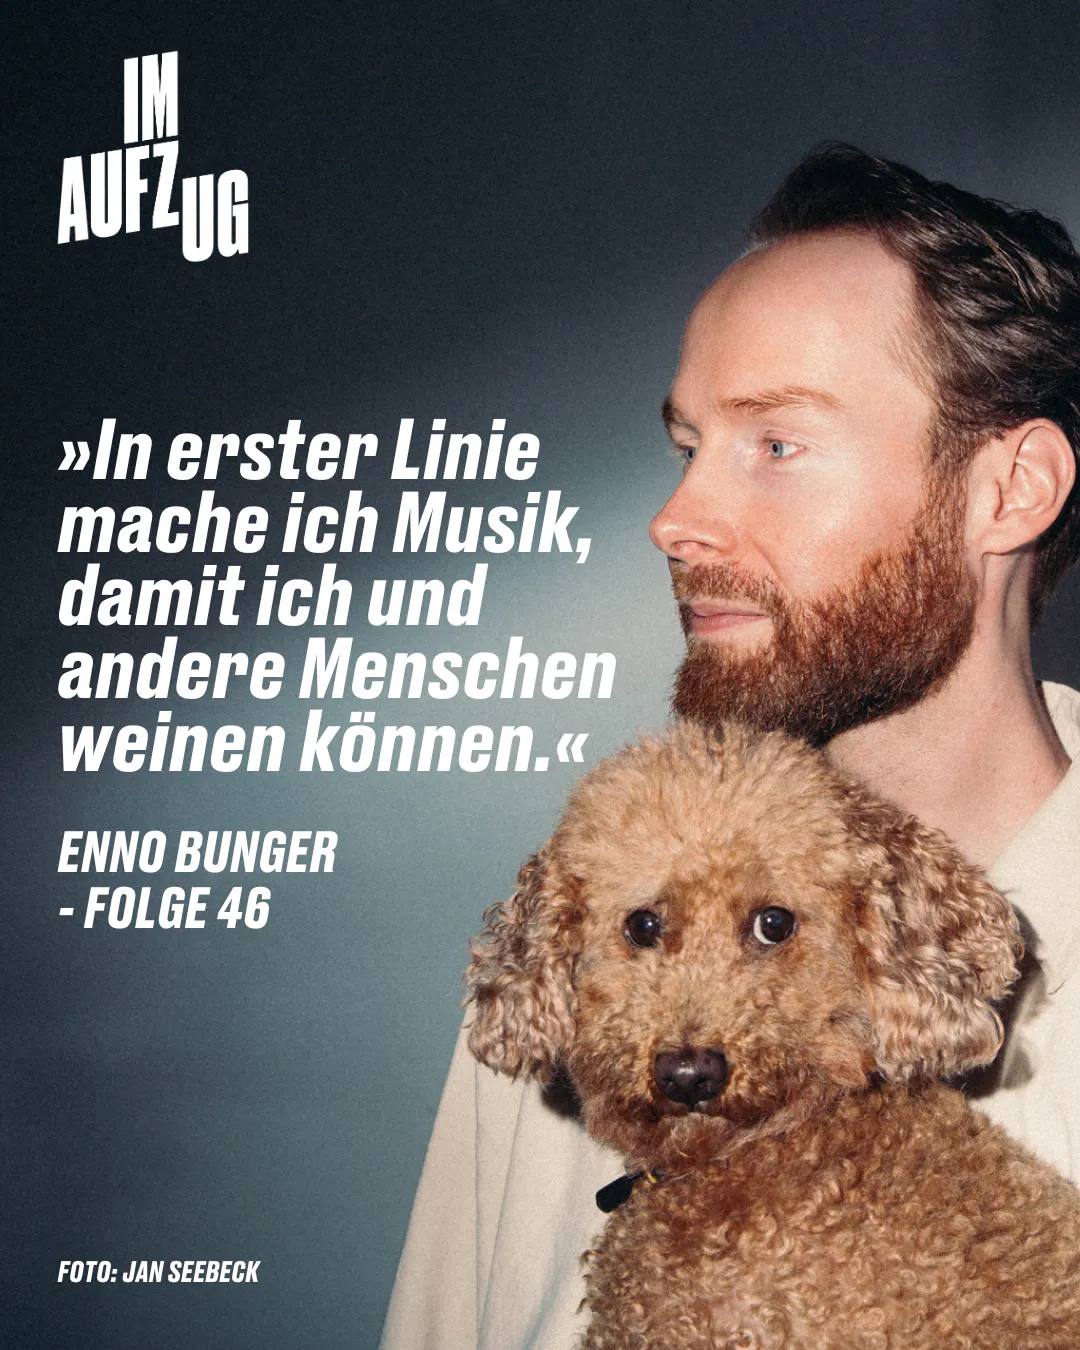 Das Bild zeigt den Musiker Enno Bunger, der nach rechts blickt und einen Hund in seinen Armen hält. Über ihm steht in großen Buchstaben &quot;IM AUFZUG&quot;. Ein Zitat von ihm ist auf dem Bild zu sehen: &quot;In erster Linie mache ich Musik, damit ich und andere Menschen weinen können.&quot; - FOLGE 46. Im unteren Bereich des Bildes steht &quot;FOTO: JAN SEEBECK&quot;. Der Gesamteindruck ist der eines redaktionellen Features oder eines Interviews, das in einer Publikation erscheinen könnte.